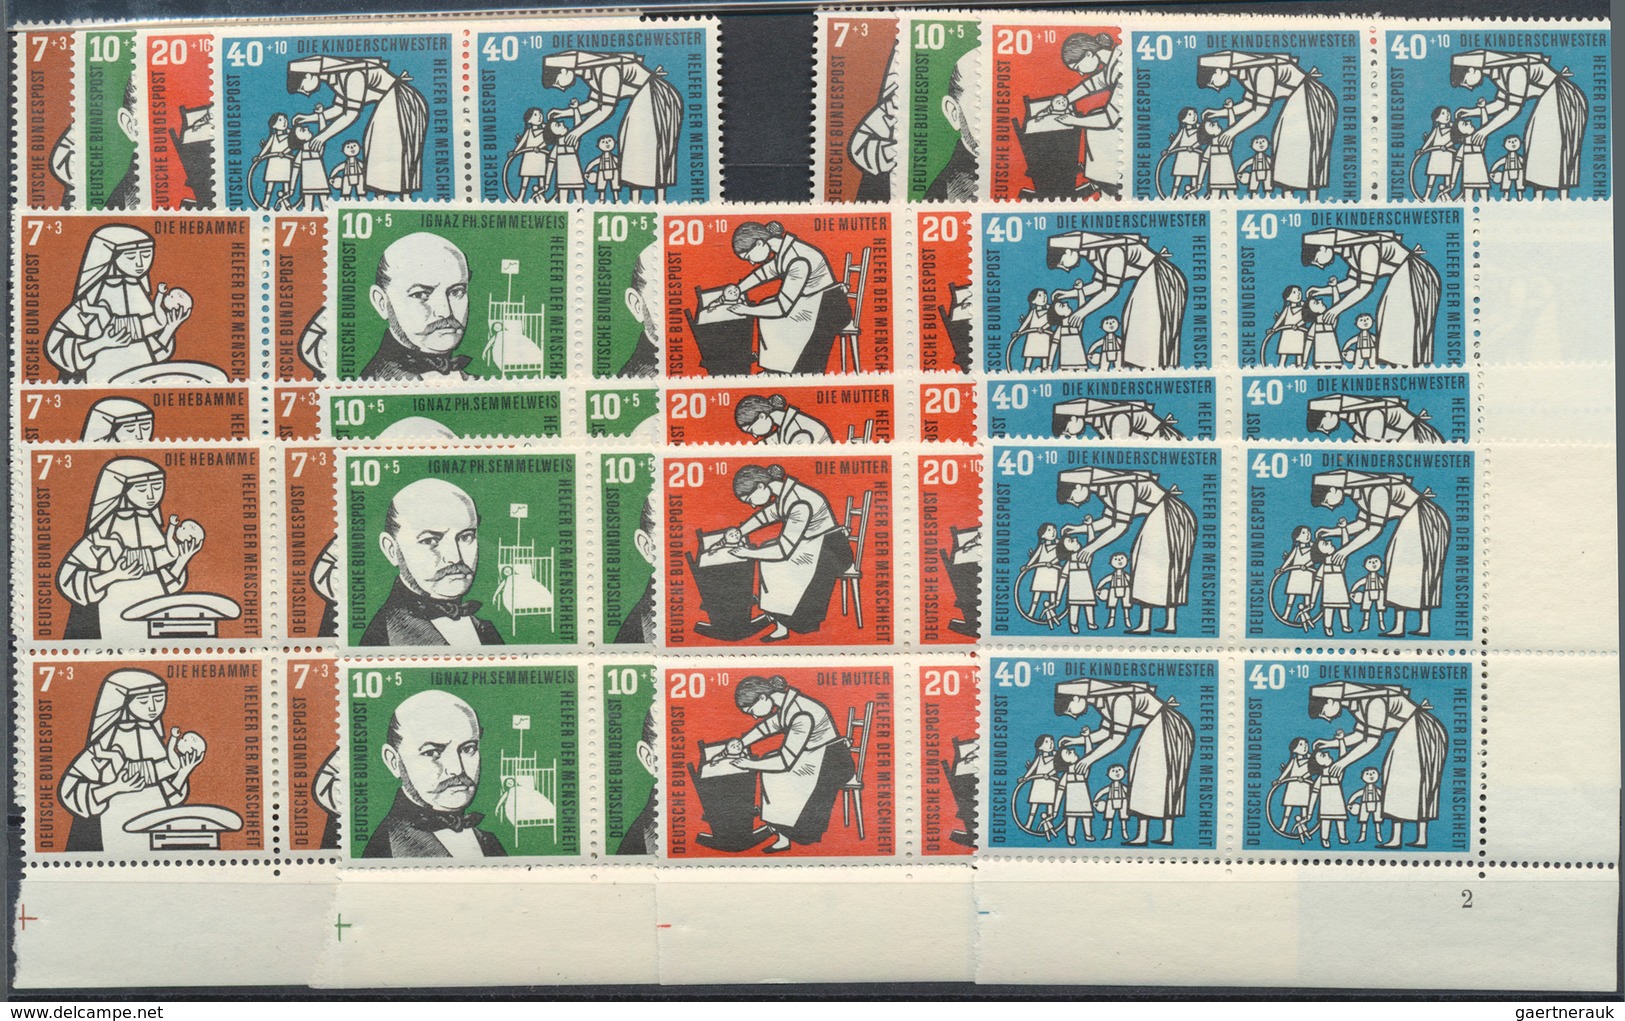 Bundesrepublik Deutschland: 1956, Wohlfahrt Per 180mal Postfrisch. MiNr. 243/46, 3.600,- €. - Sammlungen